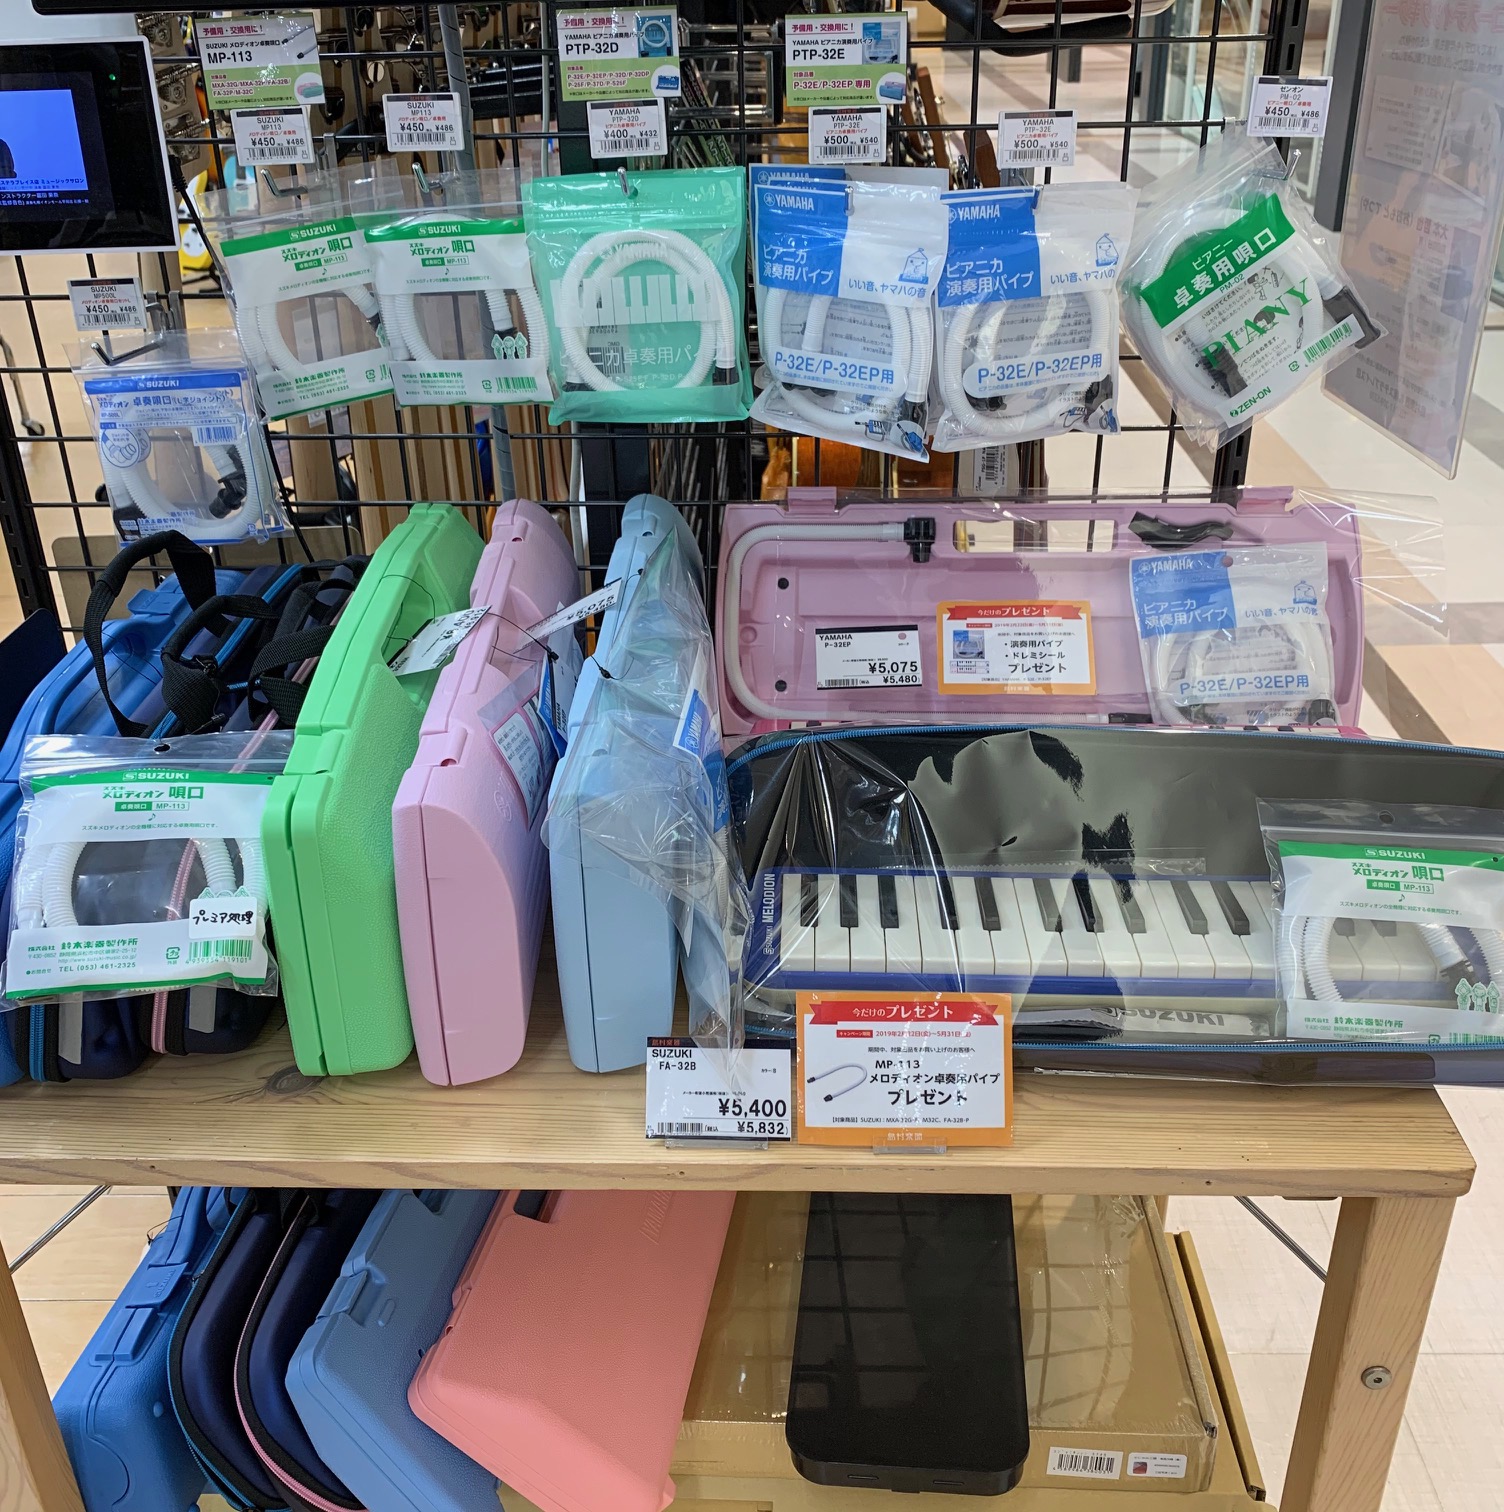 教育楽器 新学期は新しい楽器で 鍵盤ハーモニカ特集 札幌ステラプレイス店 店舗情報 島村楽器